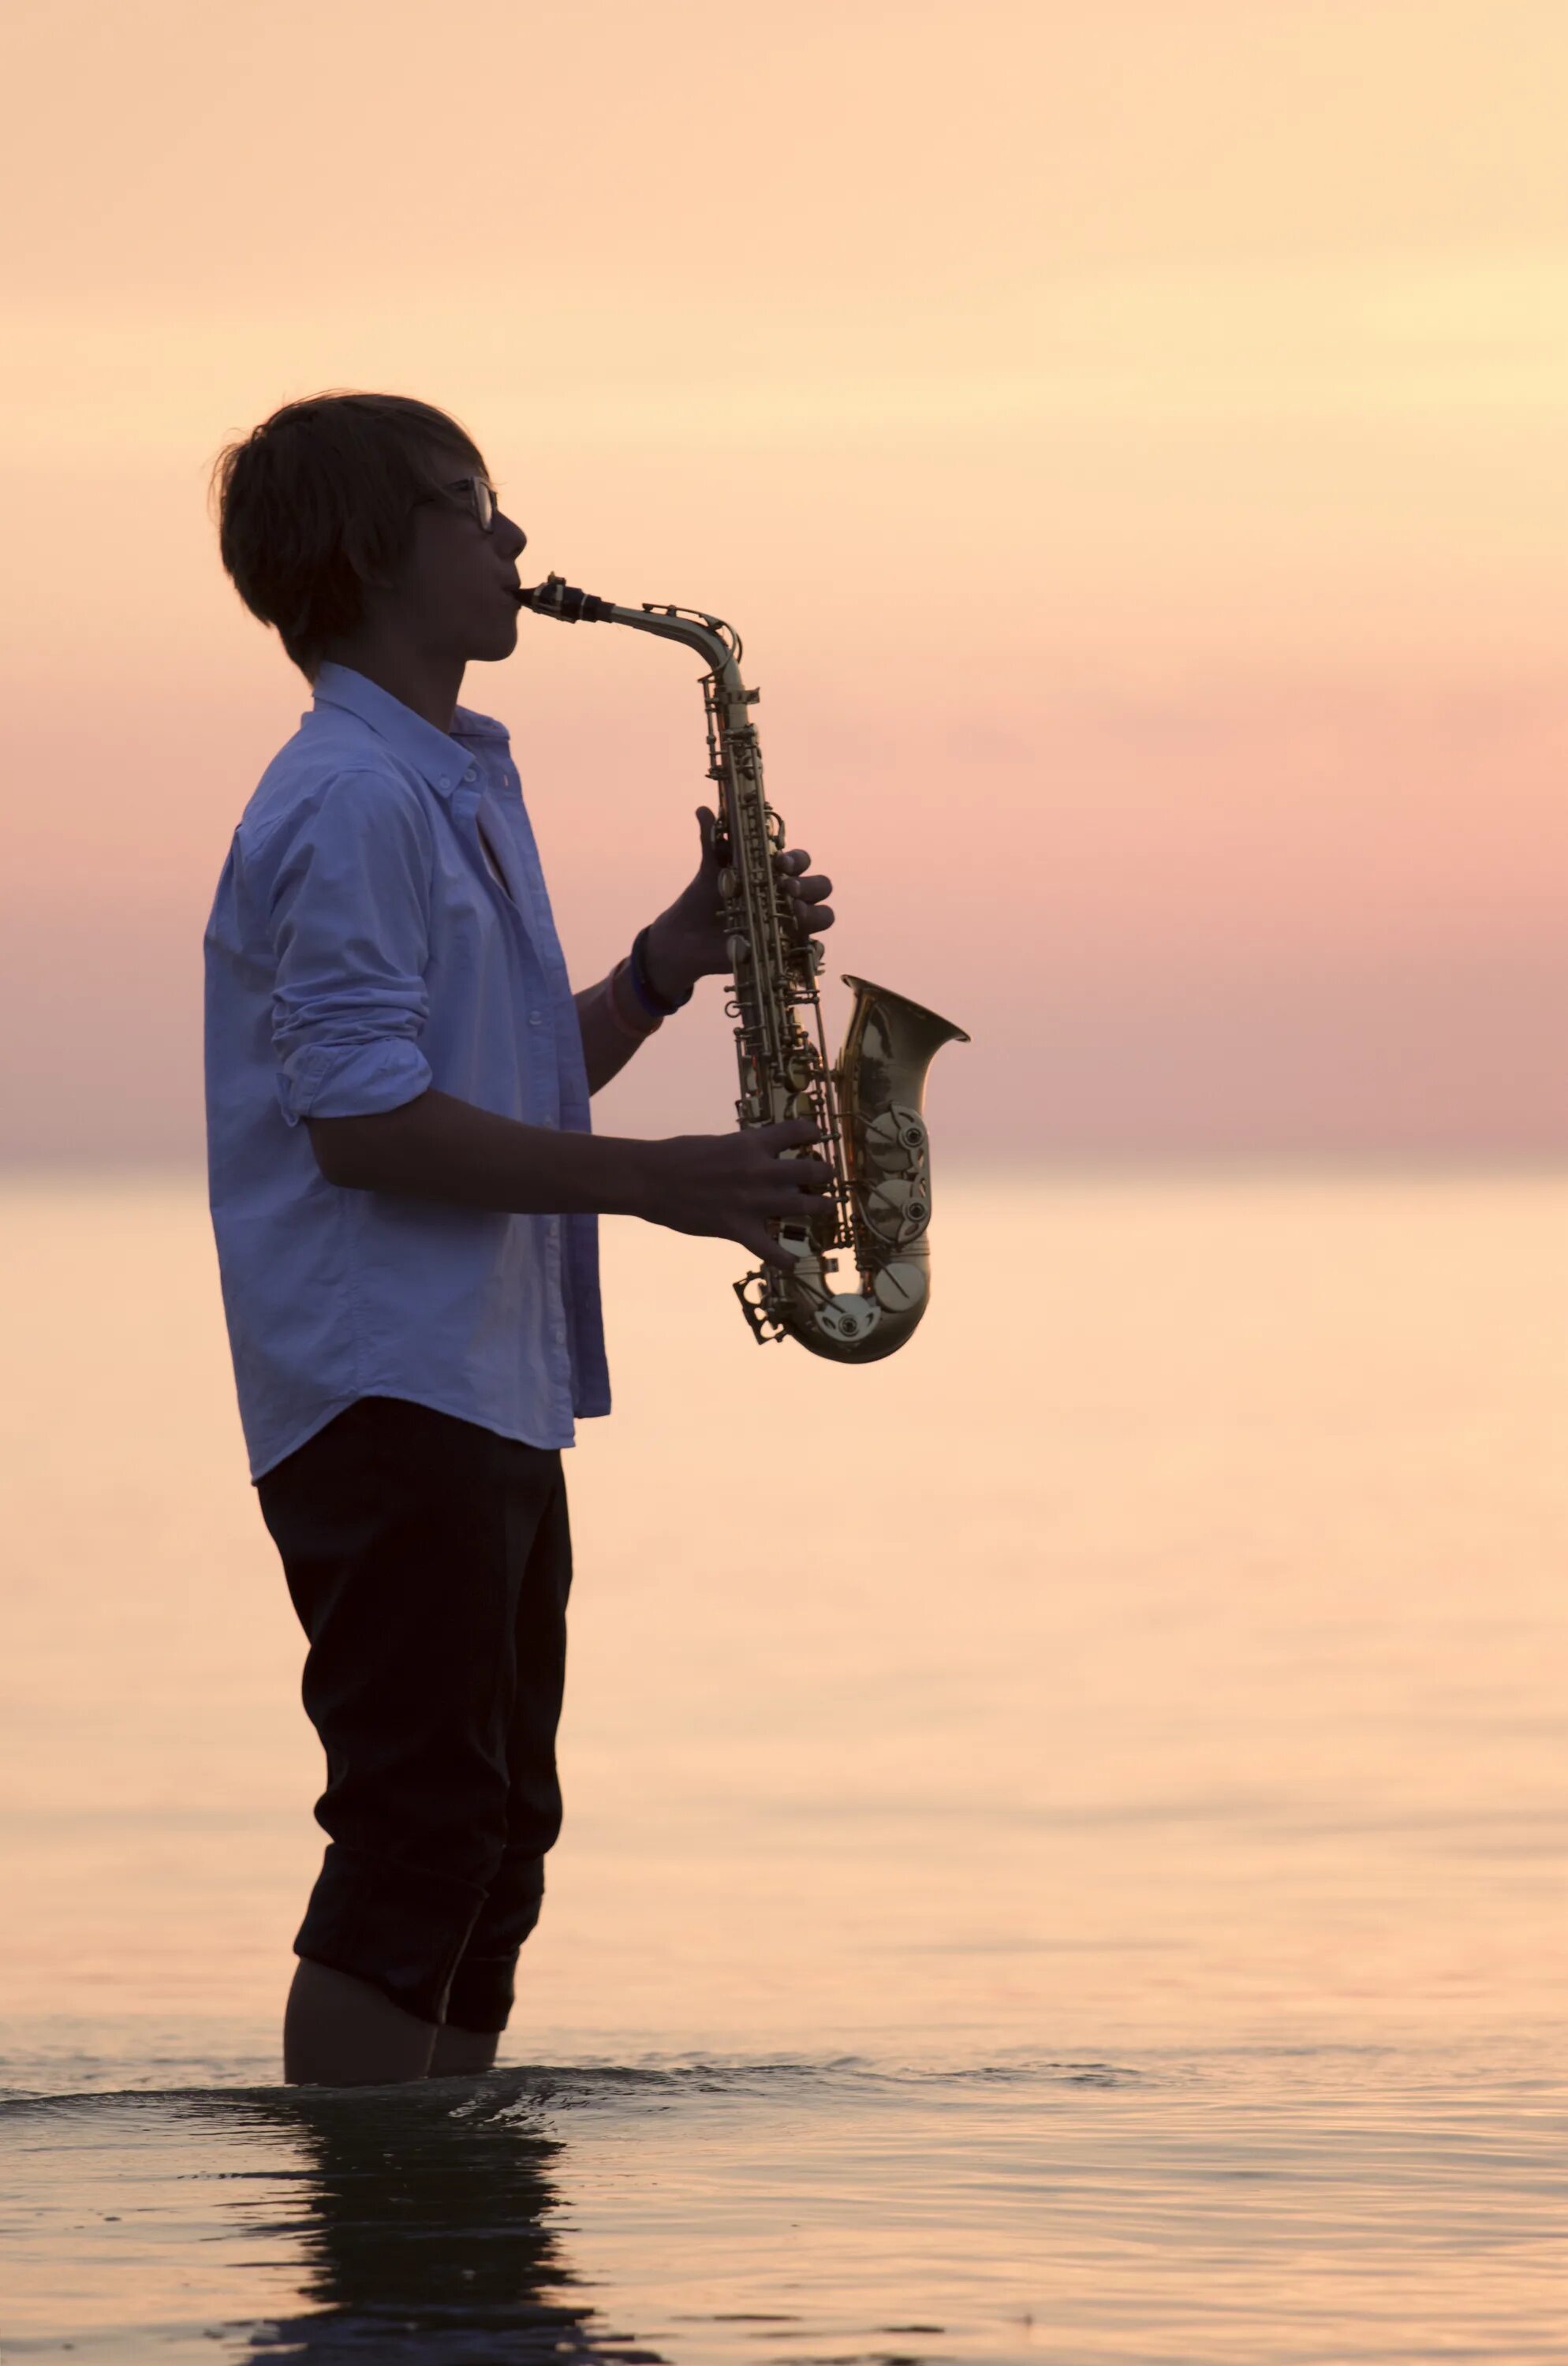 Без остановки слушать саксофон. Саксофон. Саксофонист на море. Человек с саксофоном. Мужчина играющий на саксофоне.